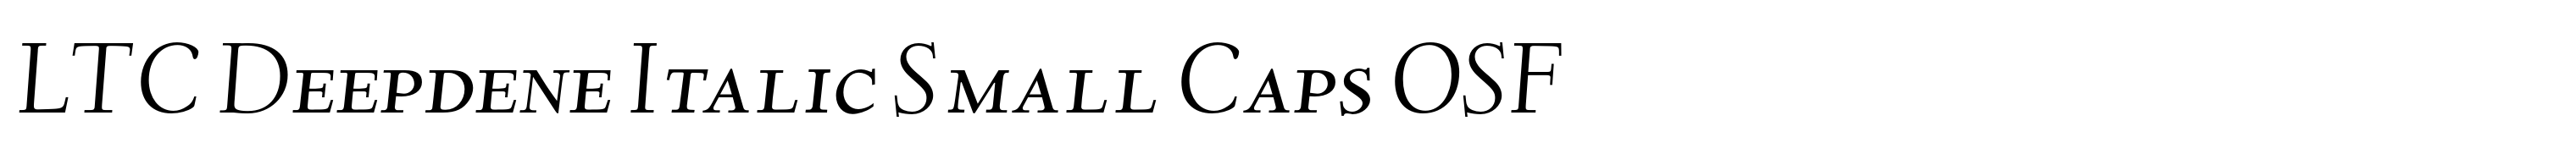 LTC Deepdene Italic Small Caps OSF